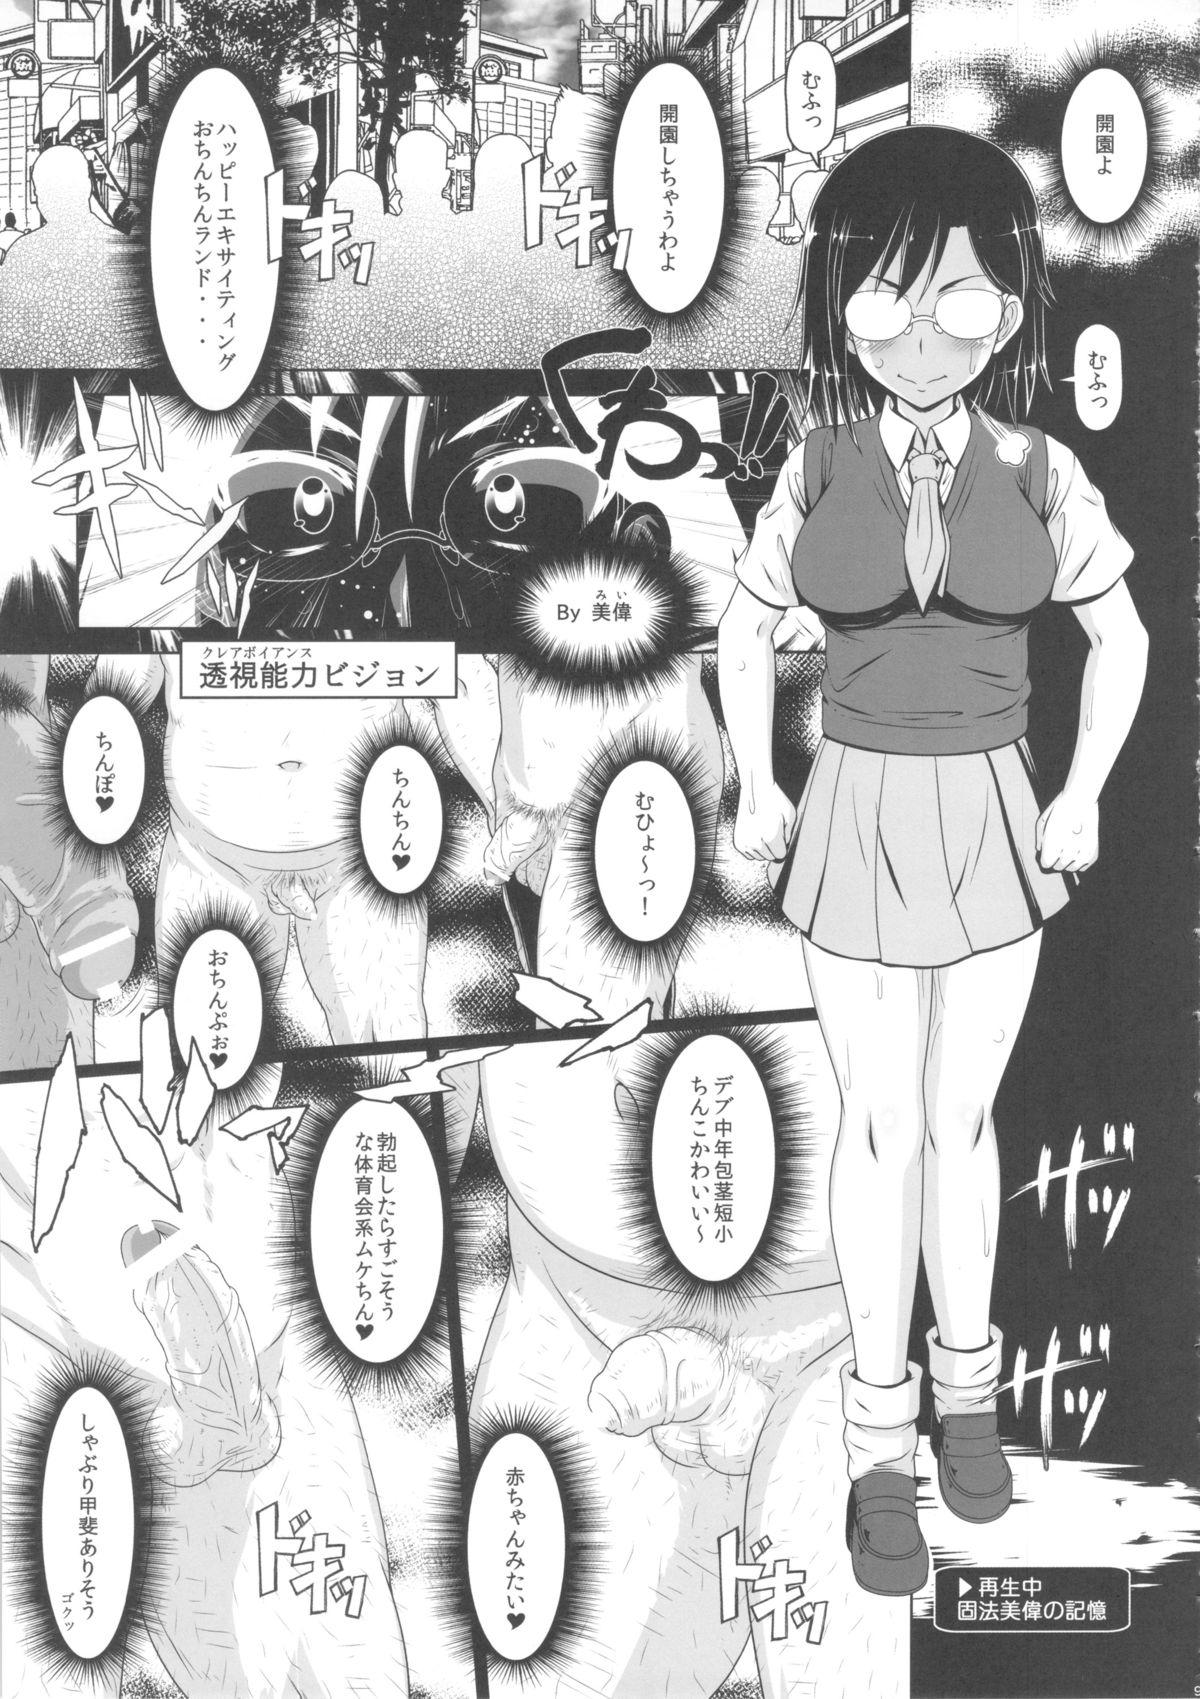 Shaking Dosukebe Megane Sennou Level 5 - Toaru kagaku no railgun Hardcorend - Page 8